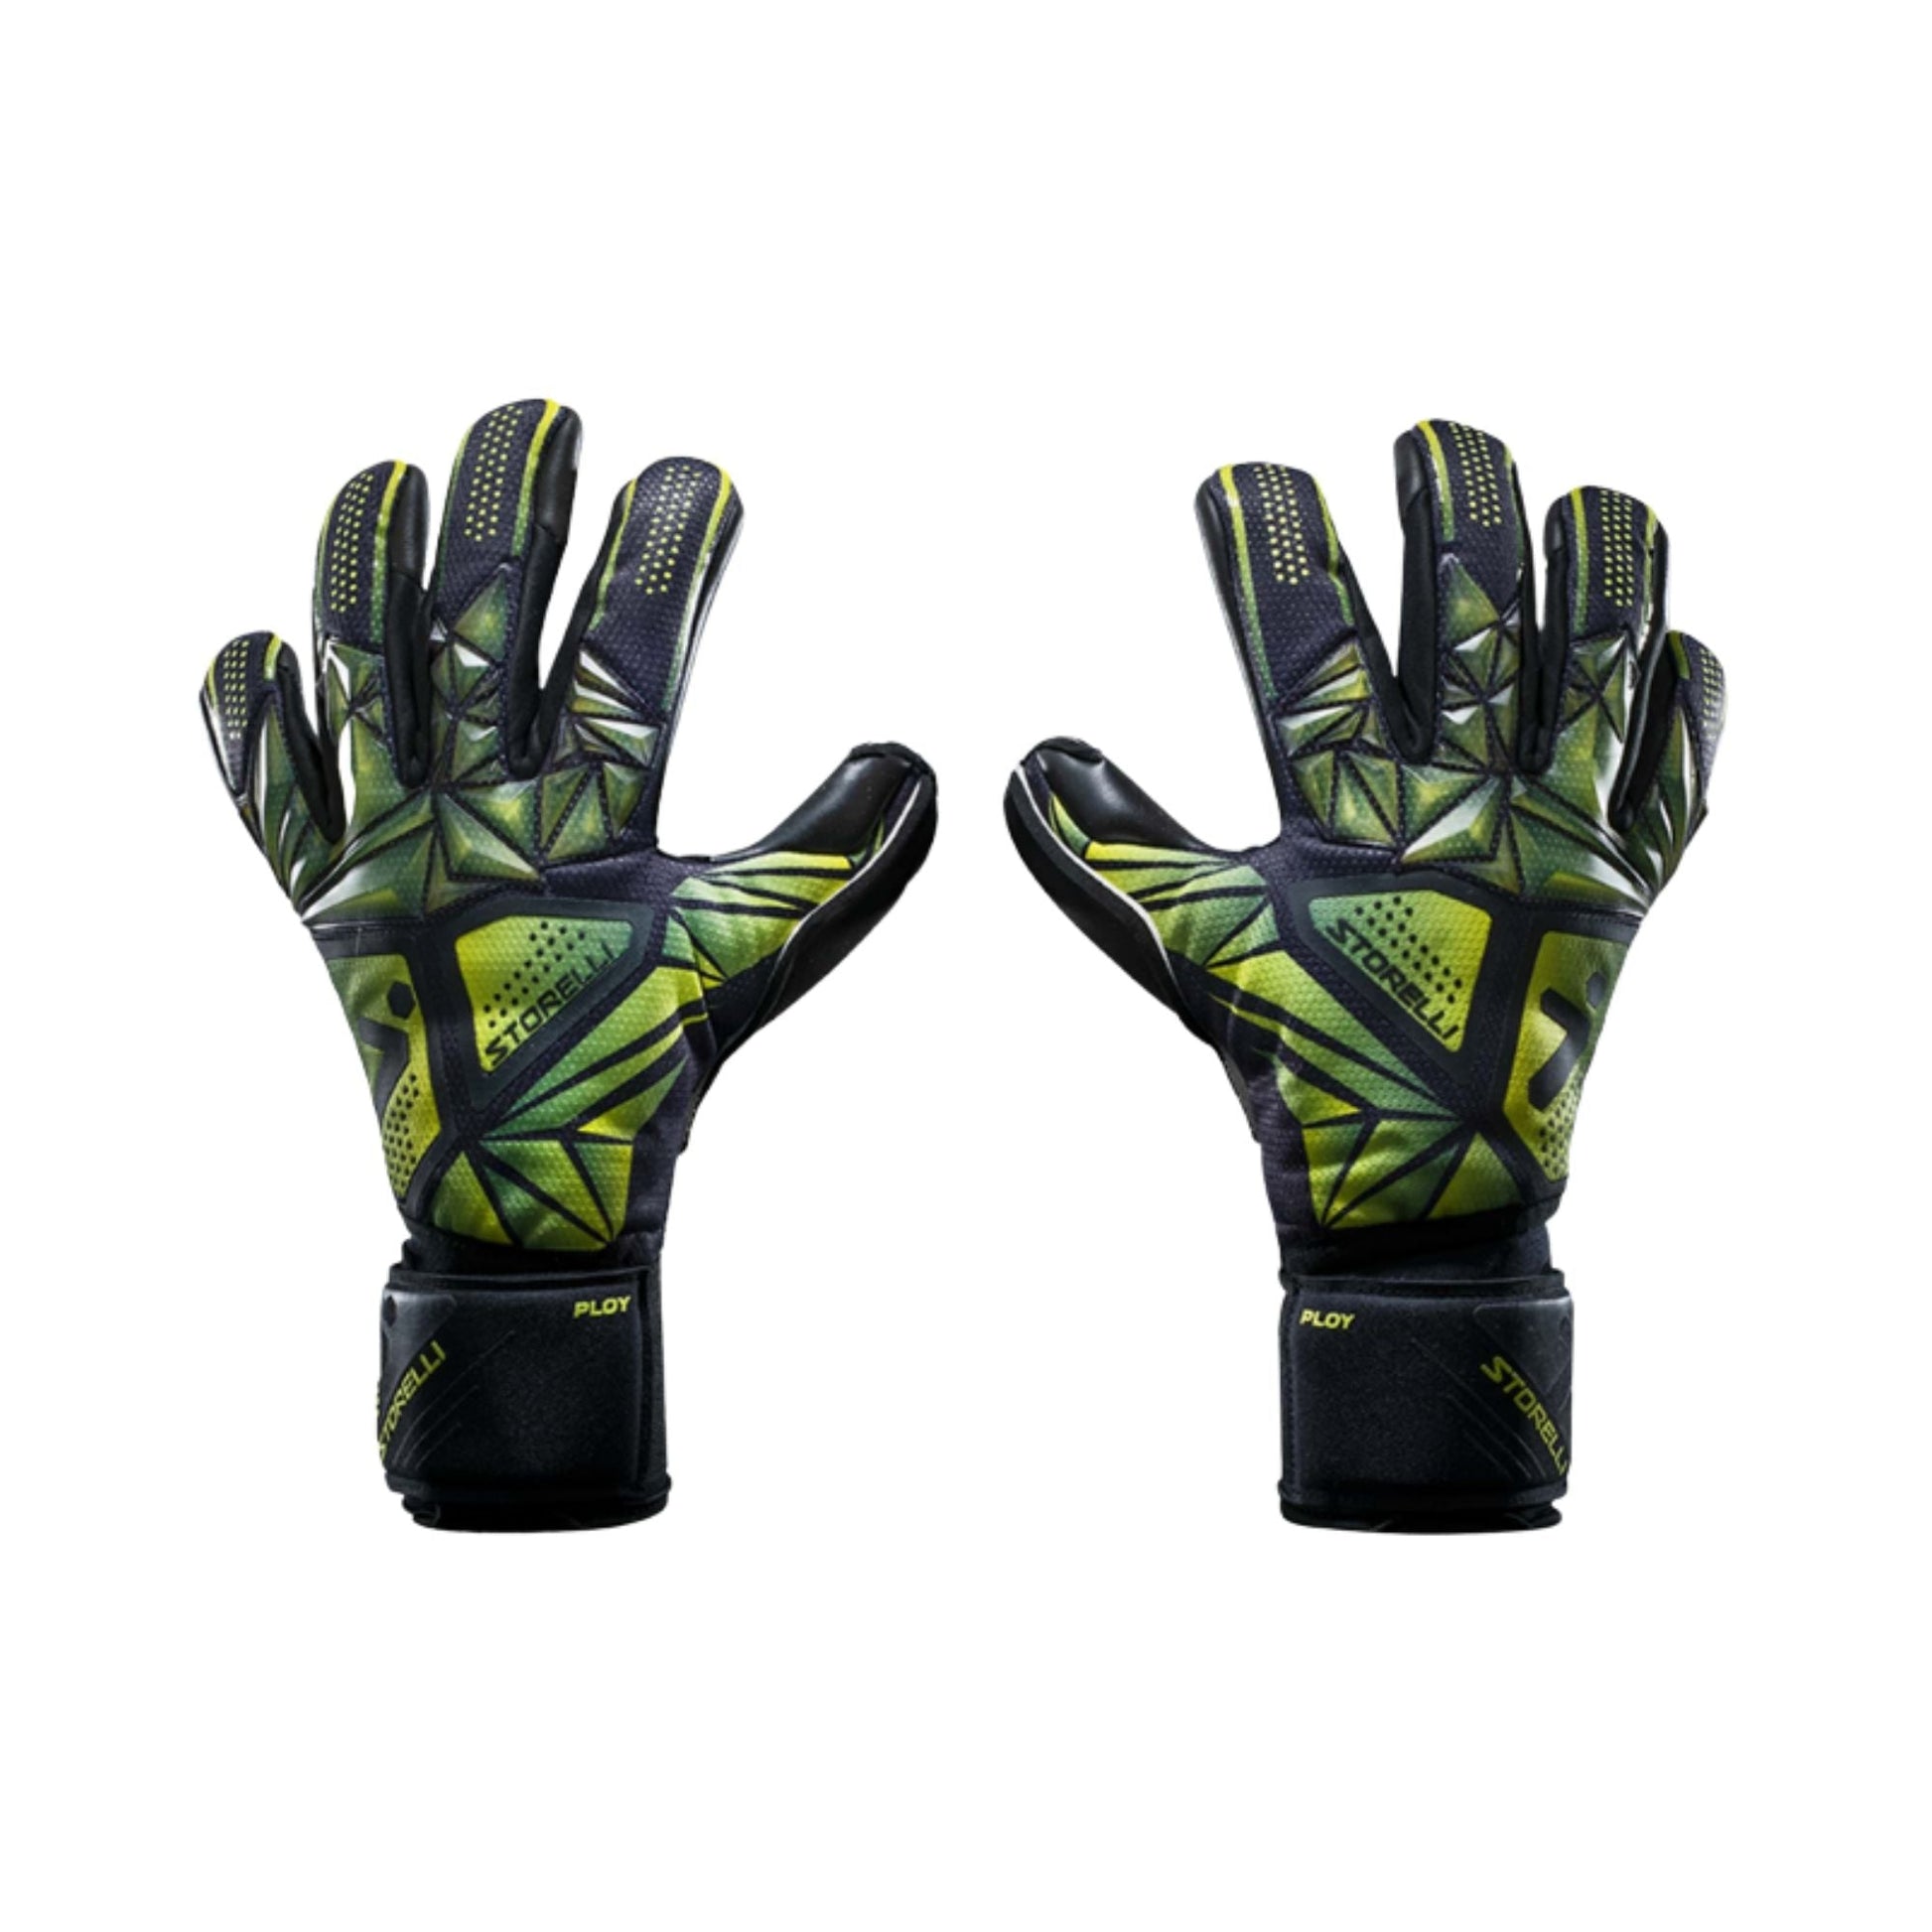 Goalkeeper Gloves - Silencer Ploy by Storelli Goalkeeper gloves ITASPORT 